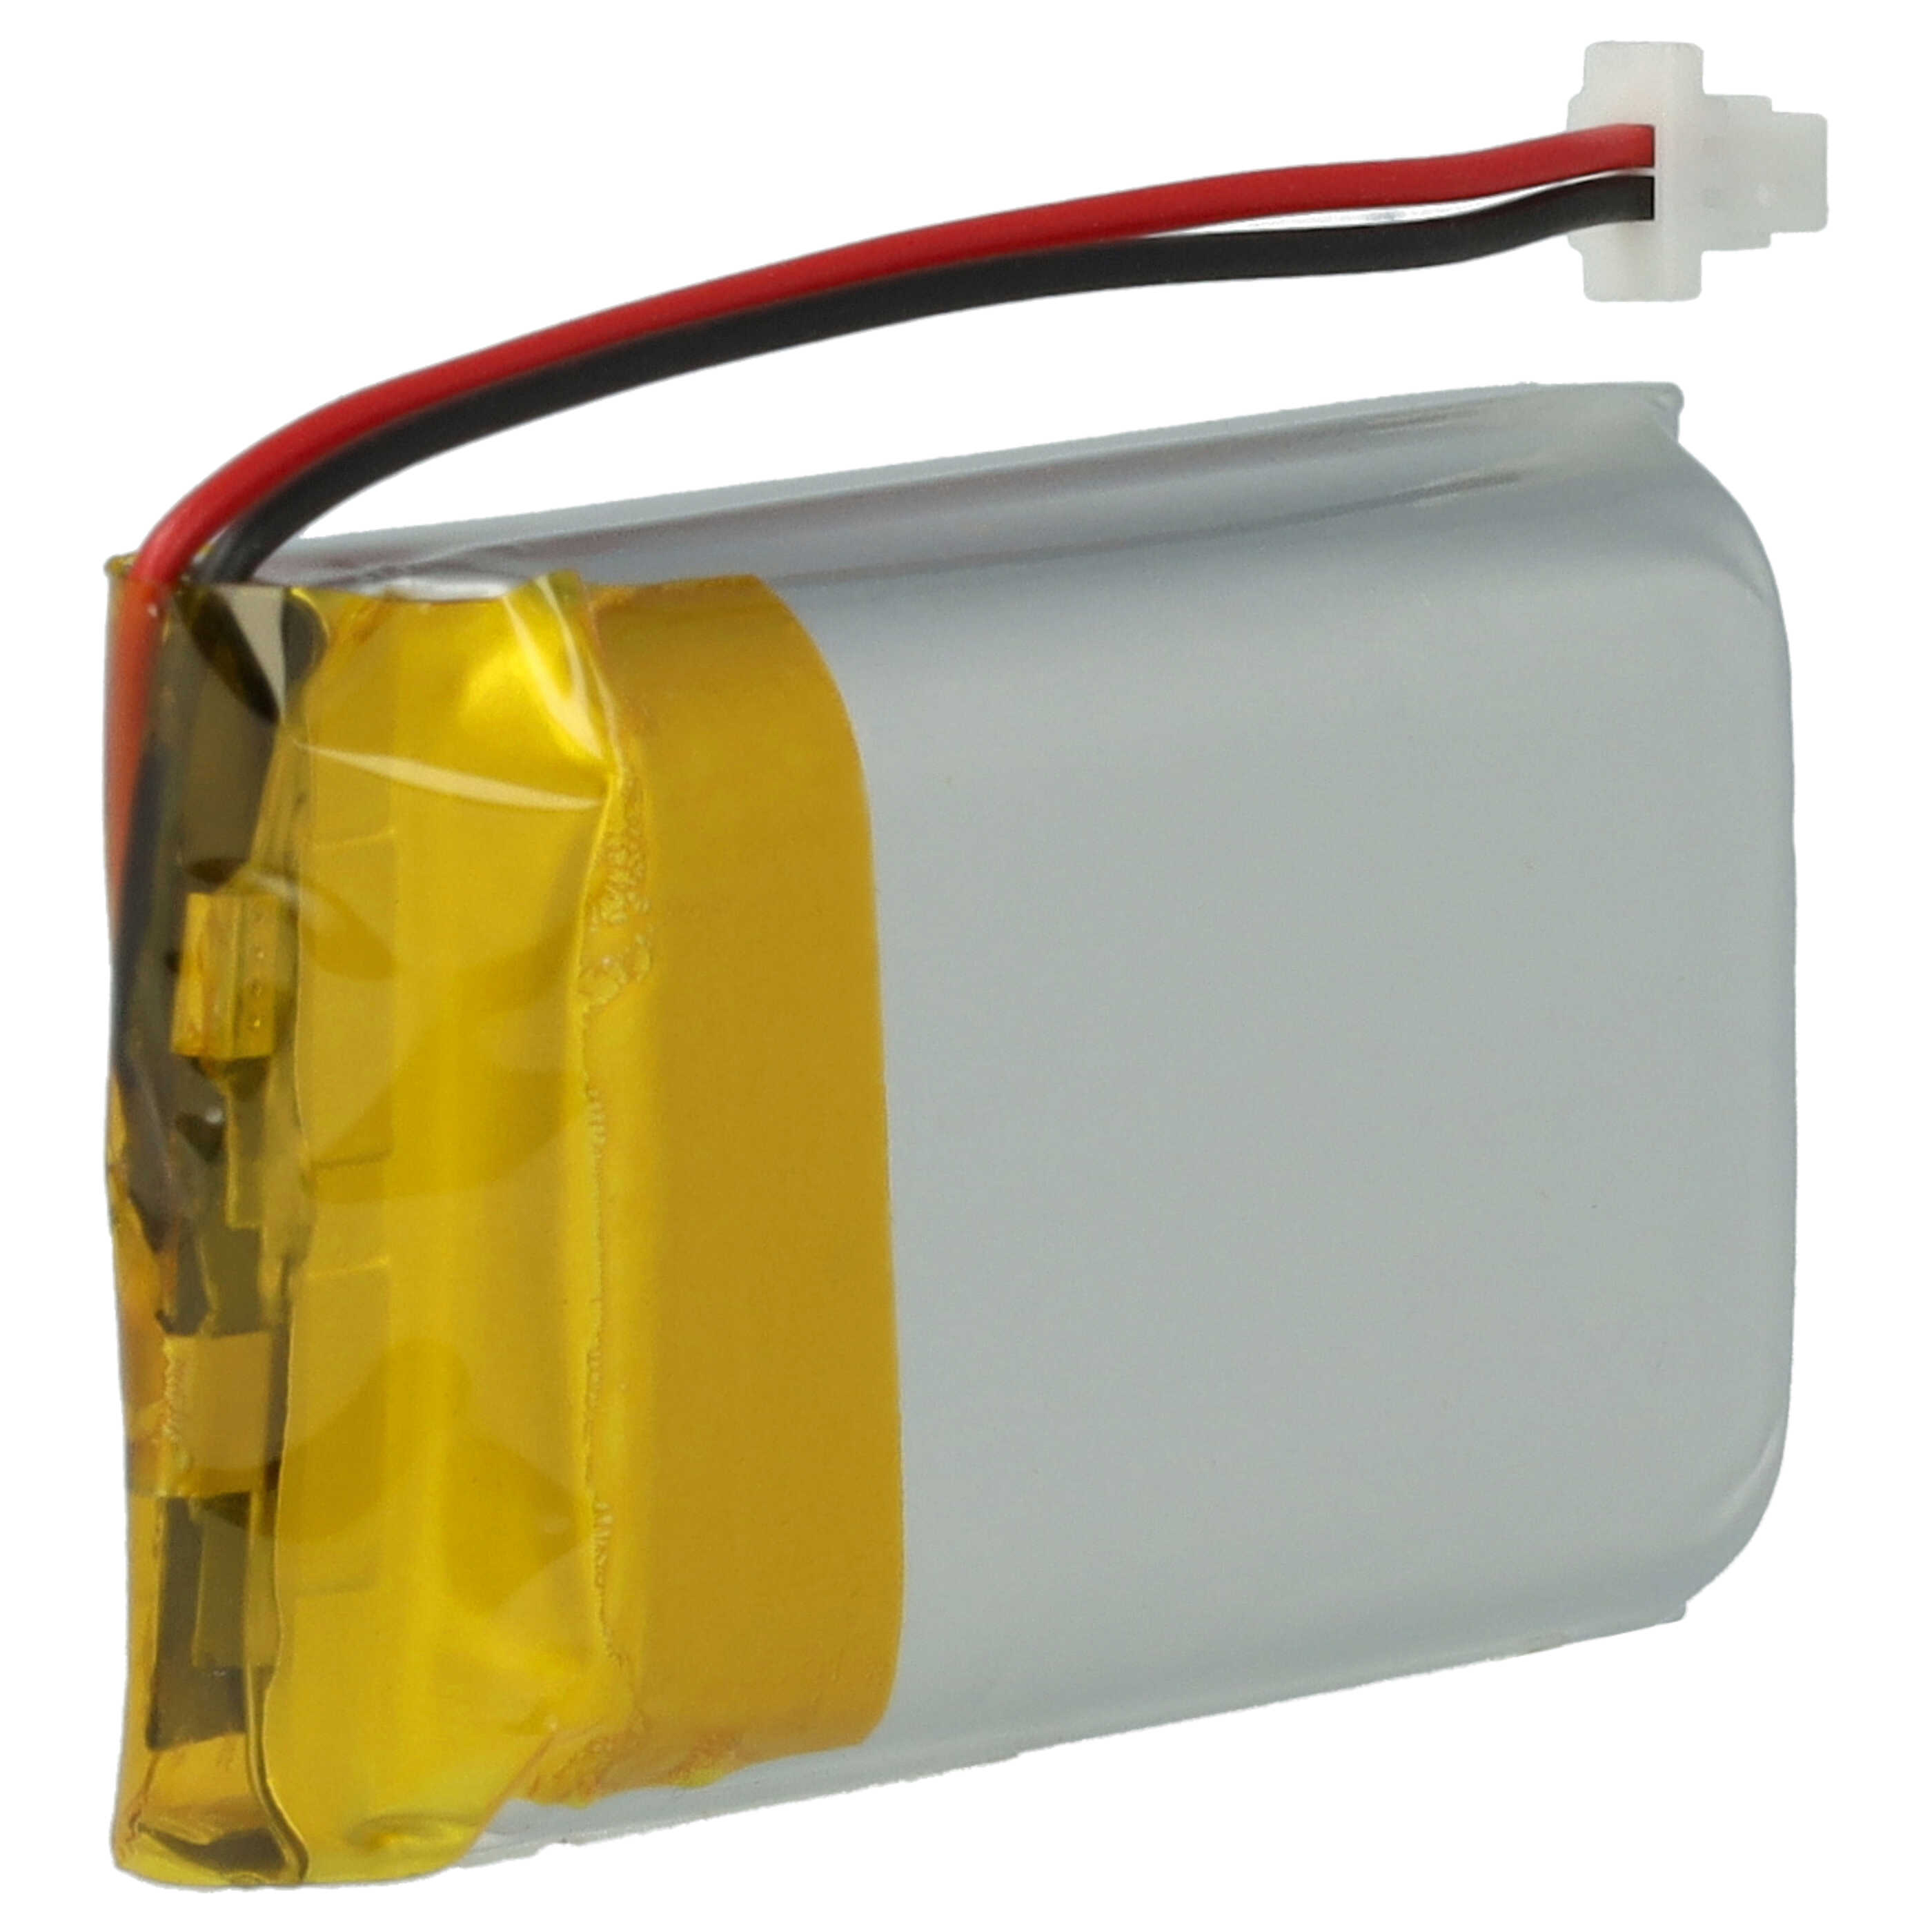 Batteria per auricolari cuffie wireless sostituisce Sena YT102540P Sena - 1100mAh 3,7V Li-Poly